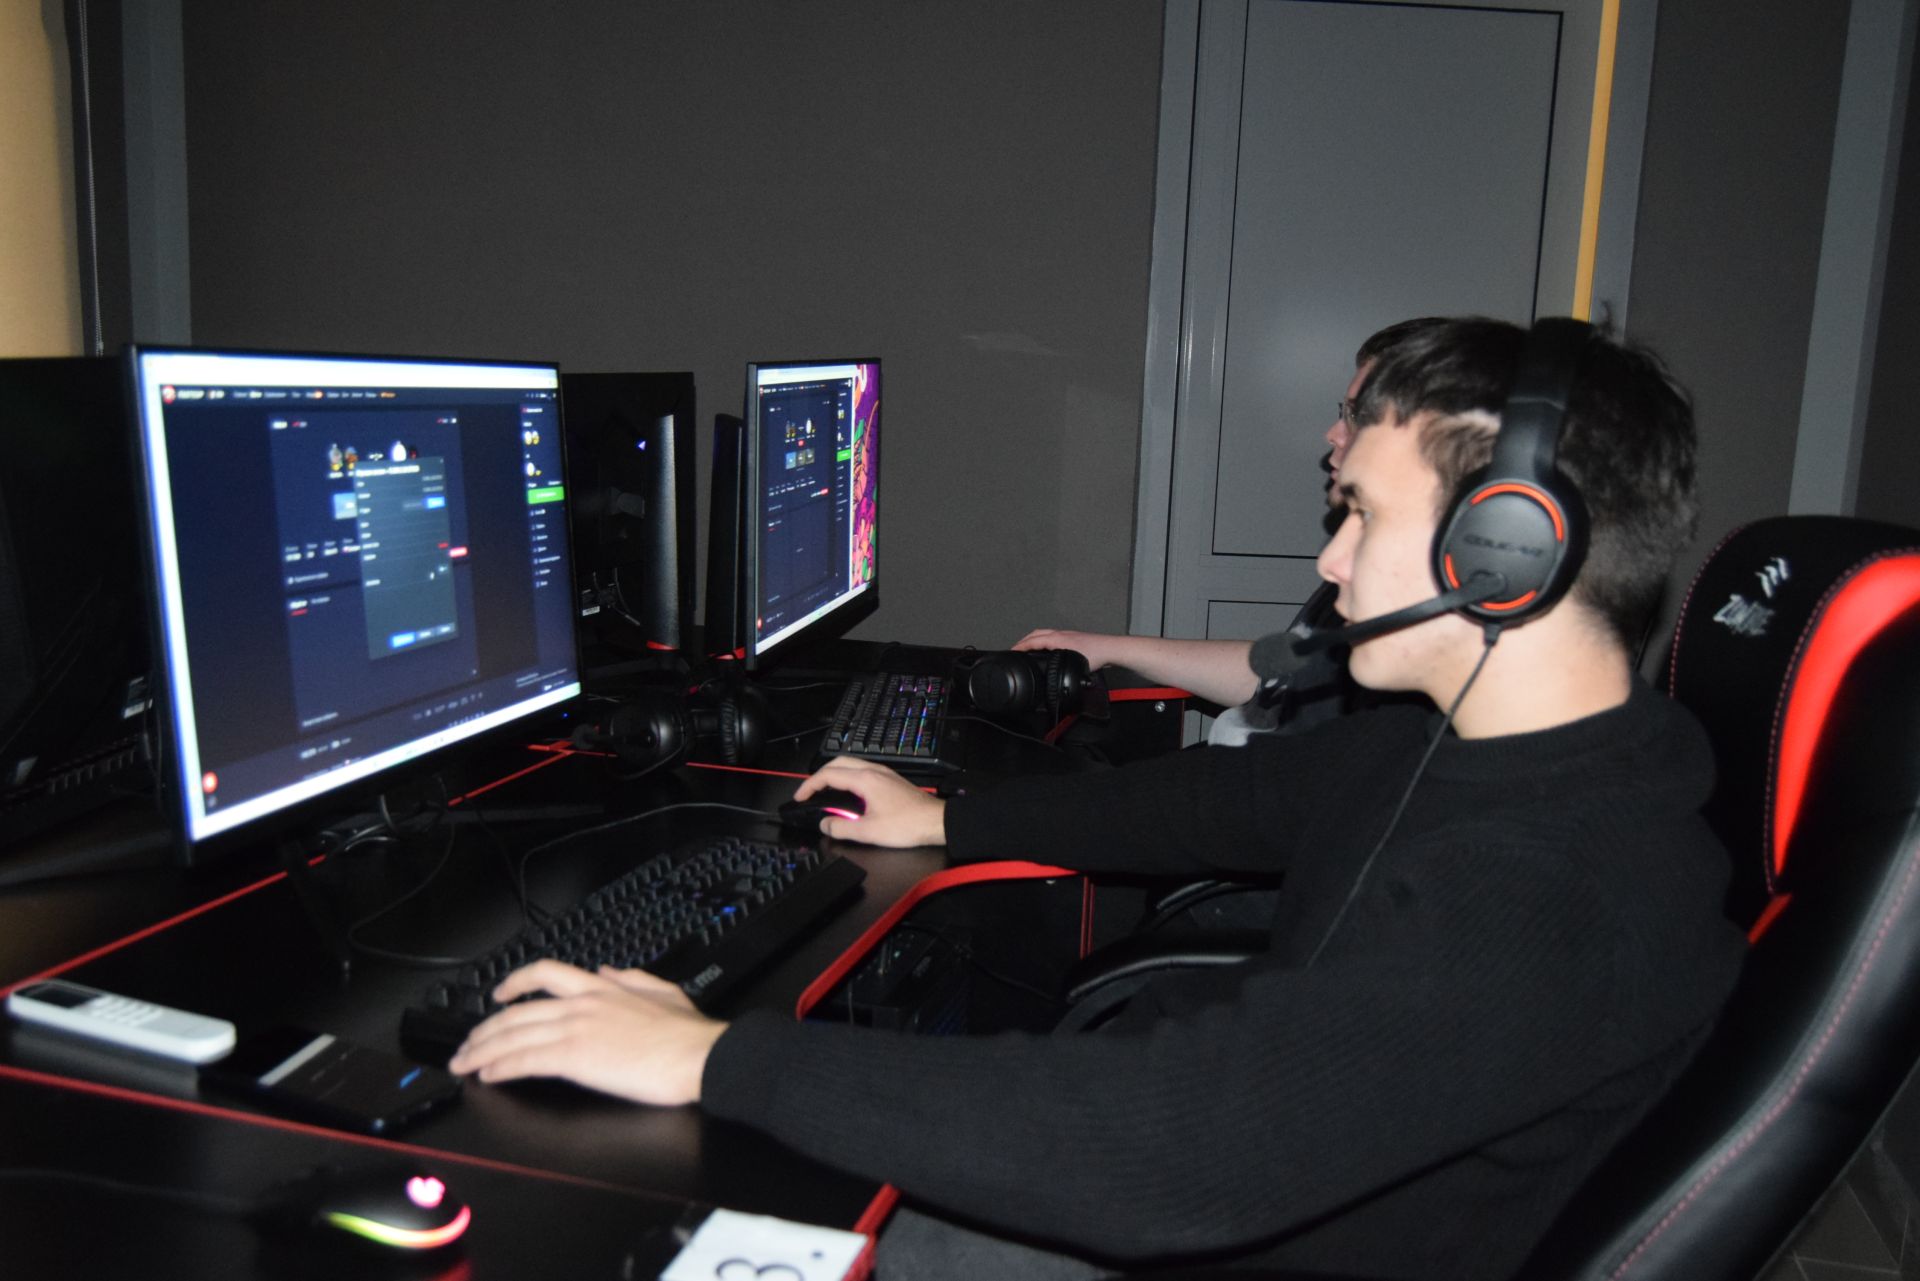 В ПМК “Атлант” прошел Кибер-турнир по CS:GO, посвященный Дню студента